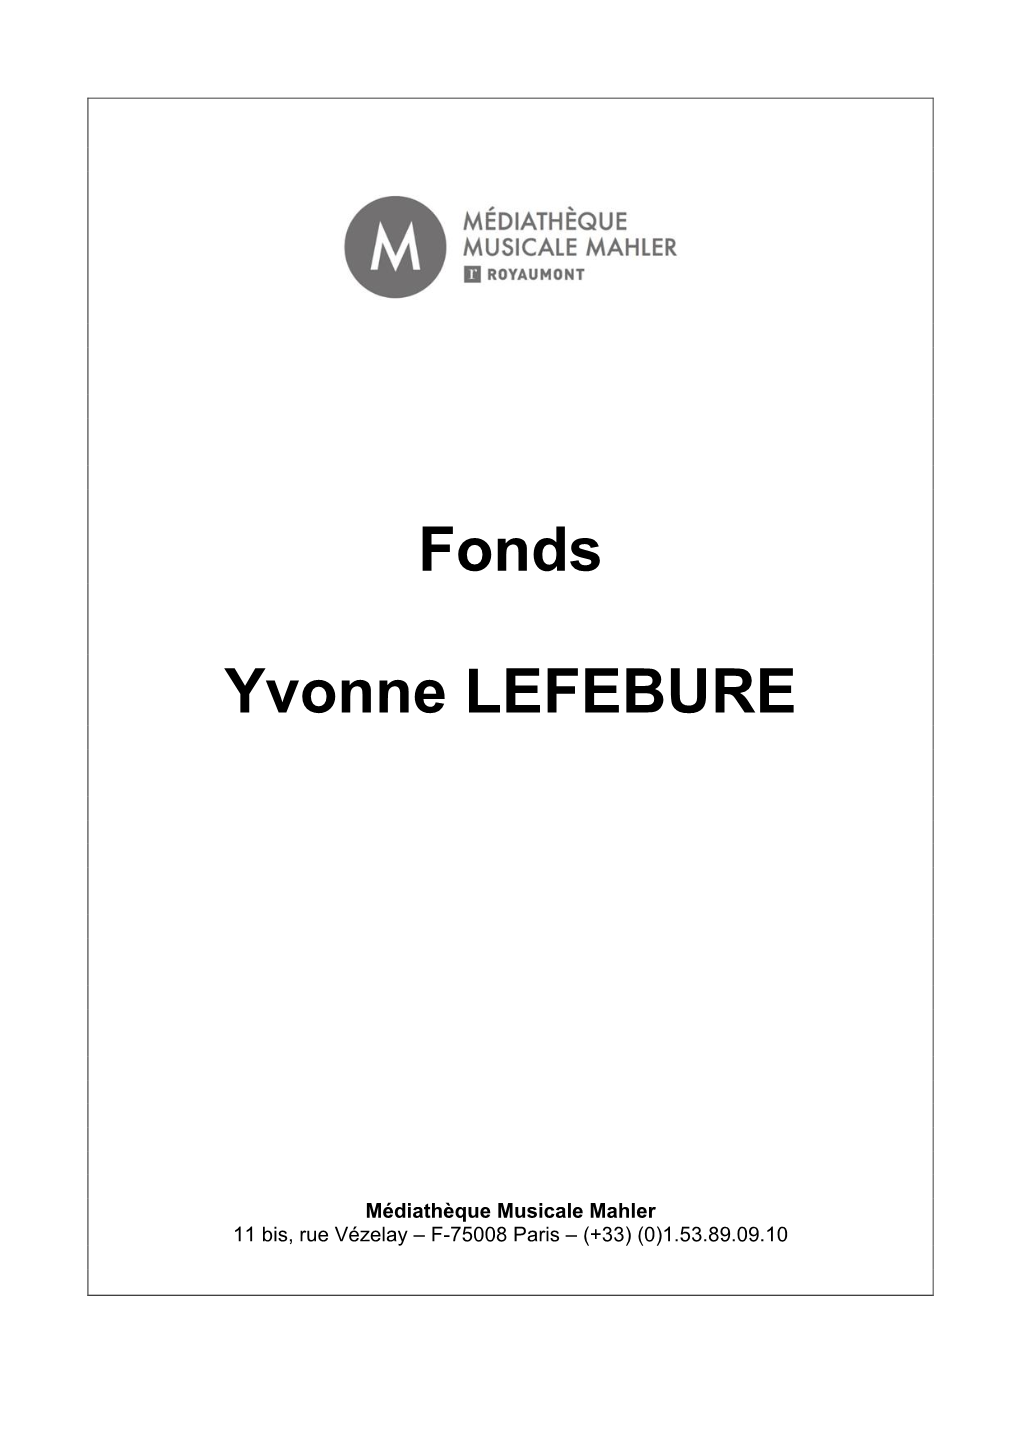 Fonds Yvonne Lefébure 2